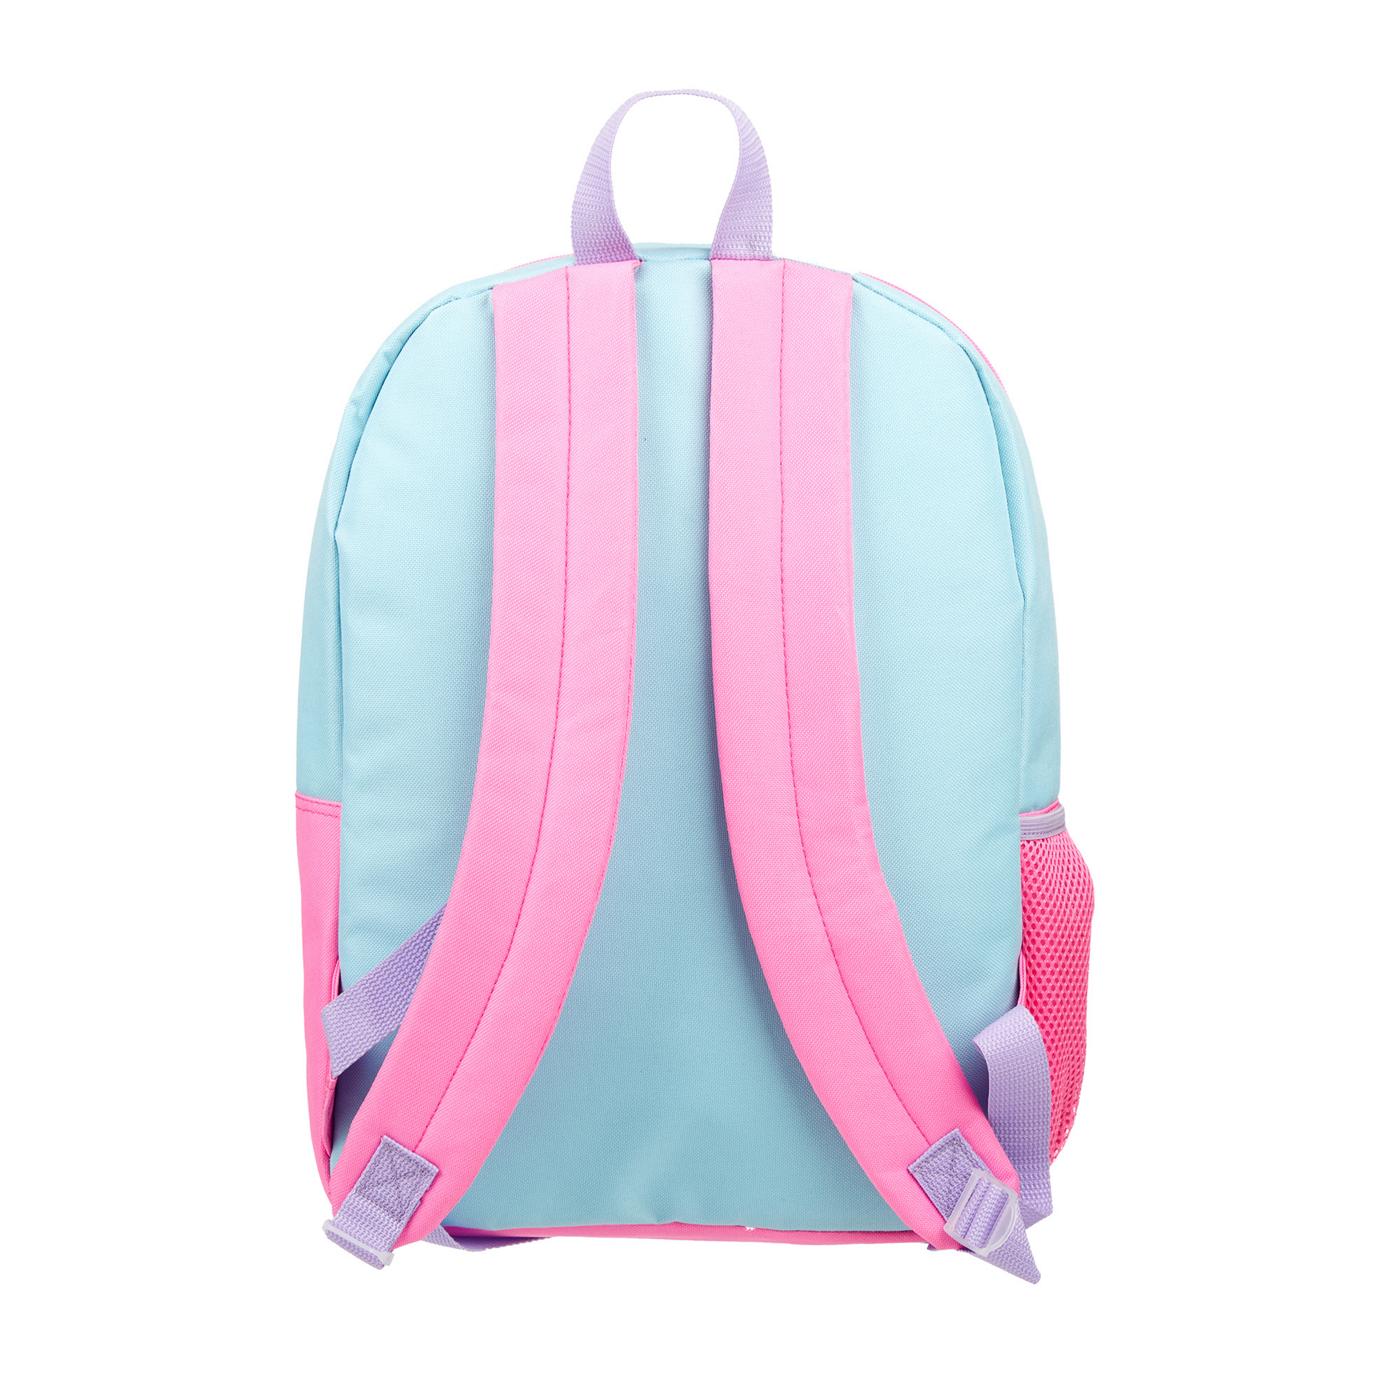 Disney Princess Backpack Set; image 5 of 5